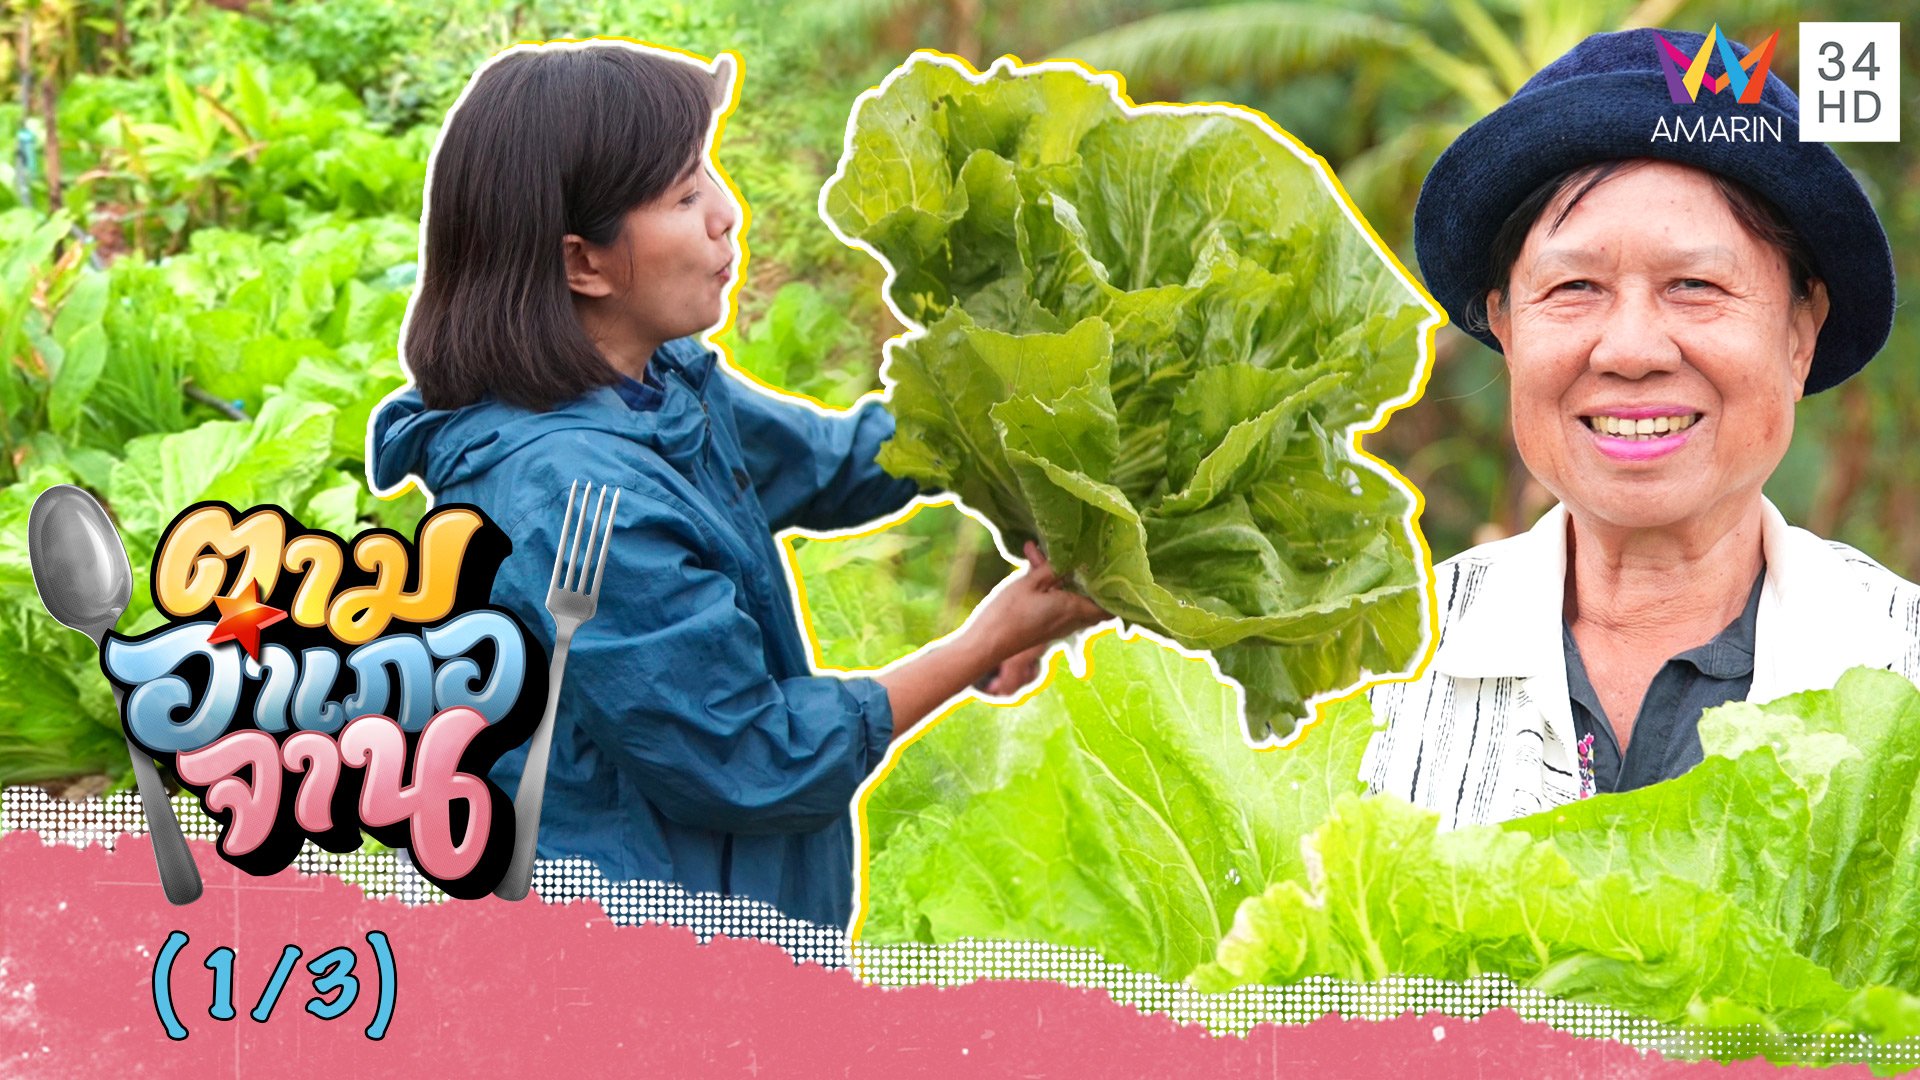 ลุยแปลงผัก เก็บผักกาดเขียวปลี กอใหญ่มาก!  | ตามอำเภอจาน | 21 ม.ค. 66 (1/3) | AMARIN TVHD34